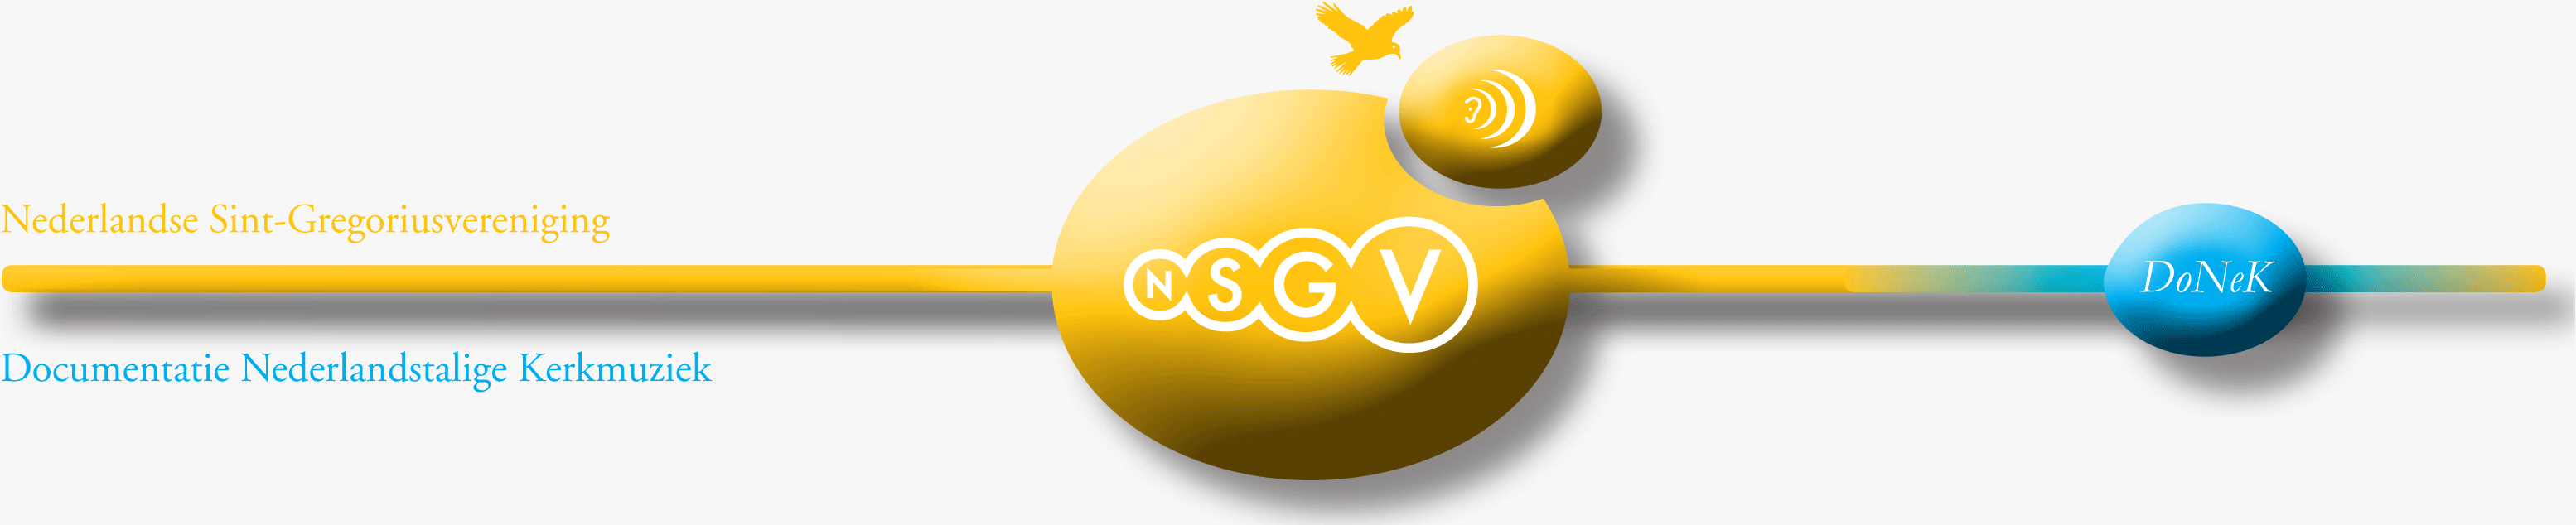 nsgv-header-grijs